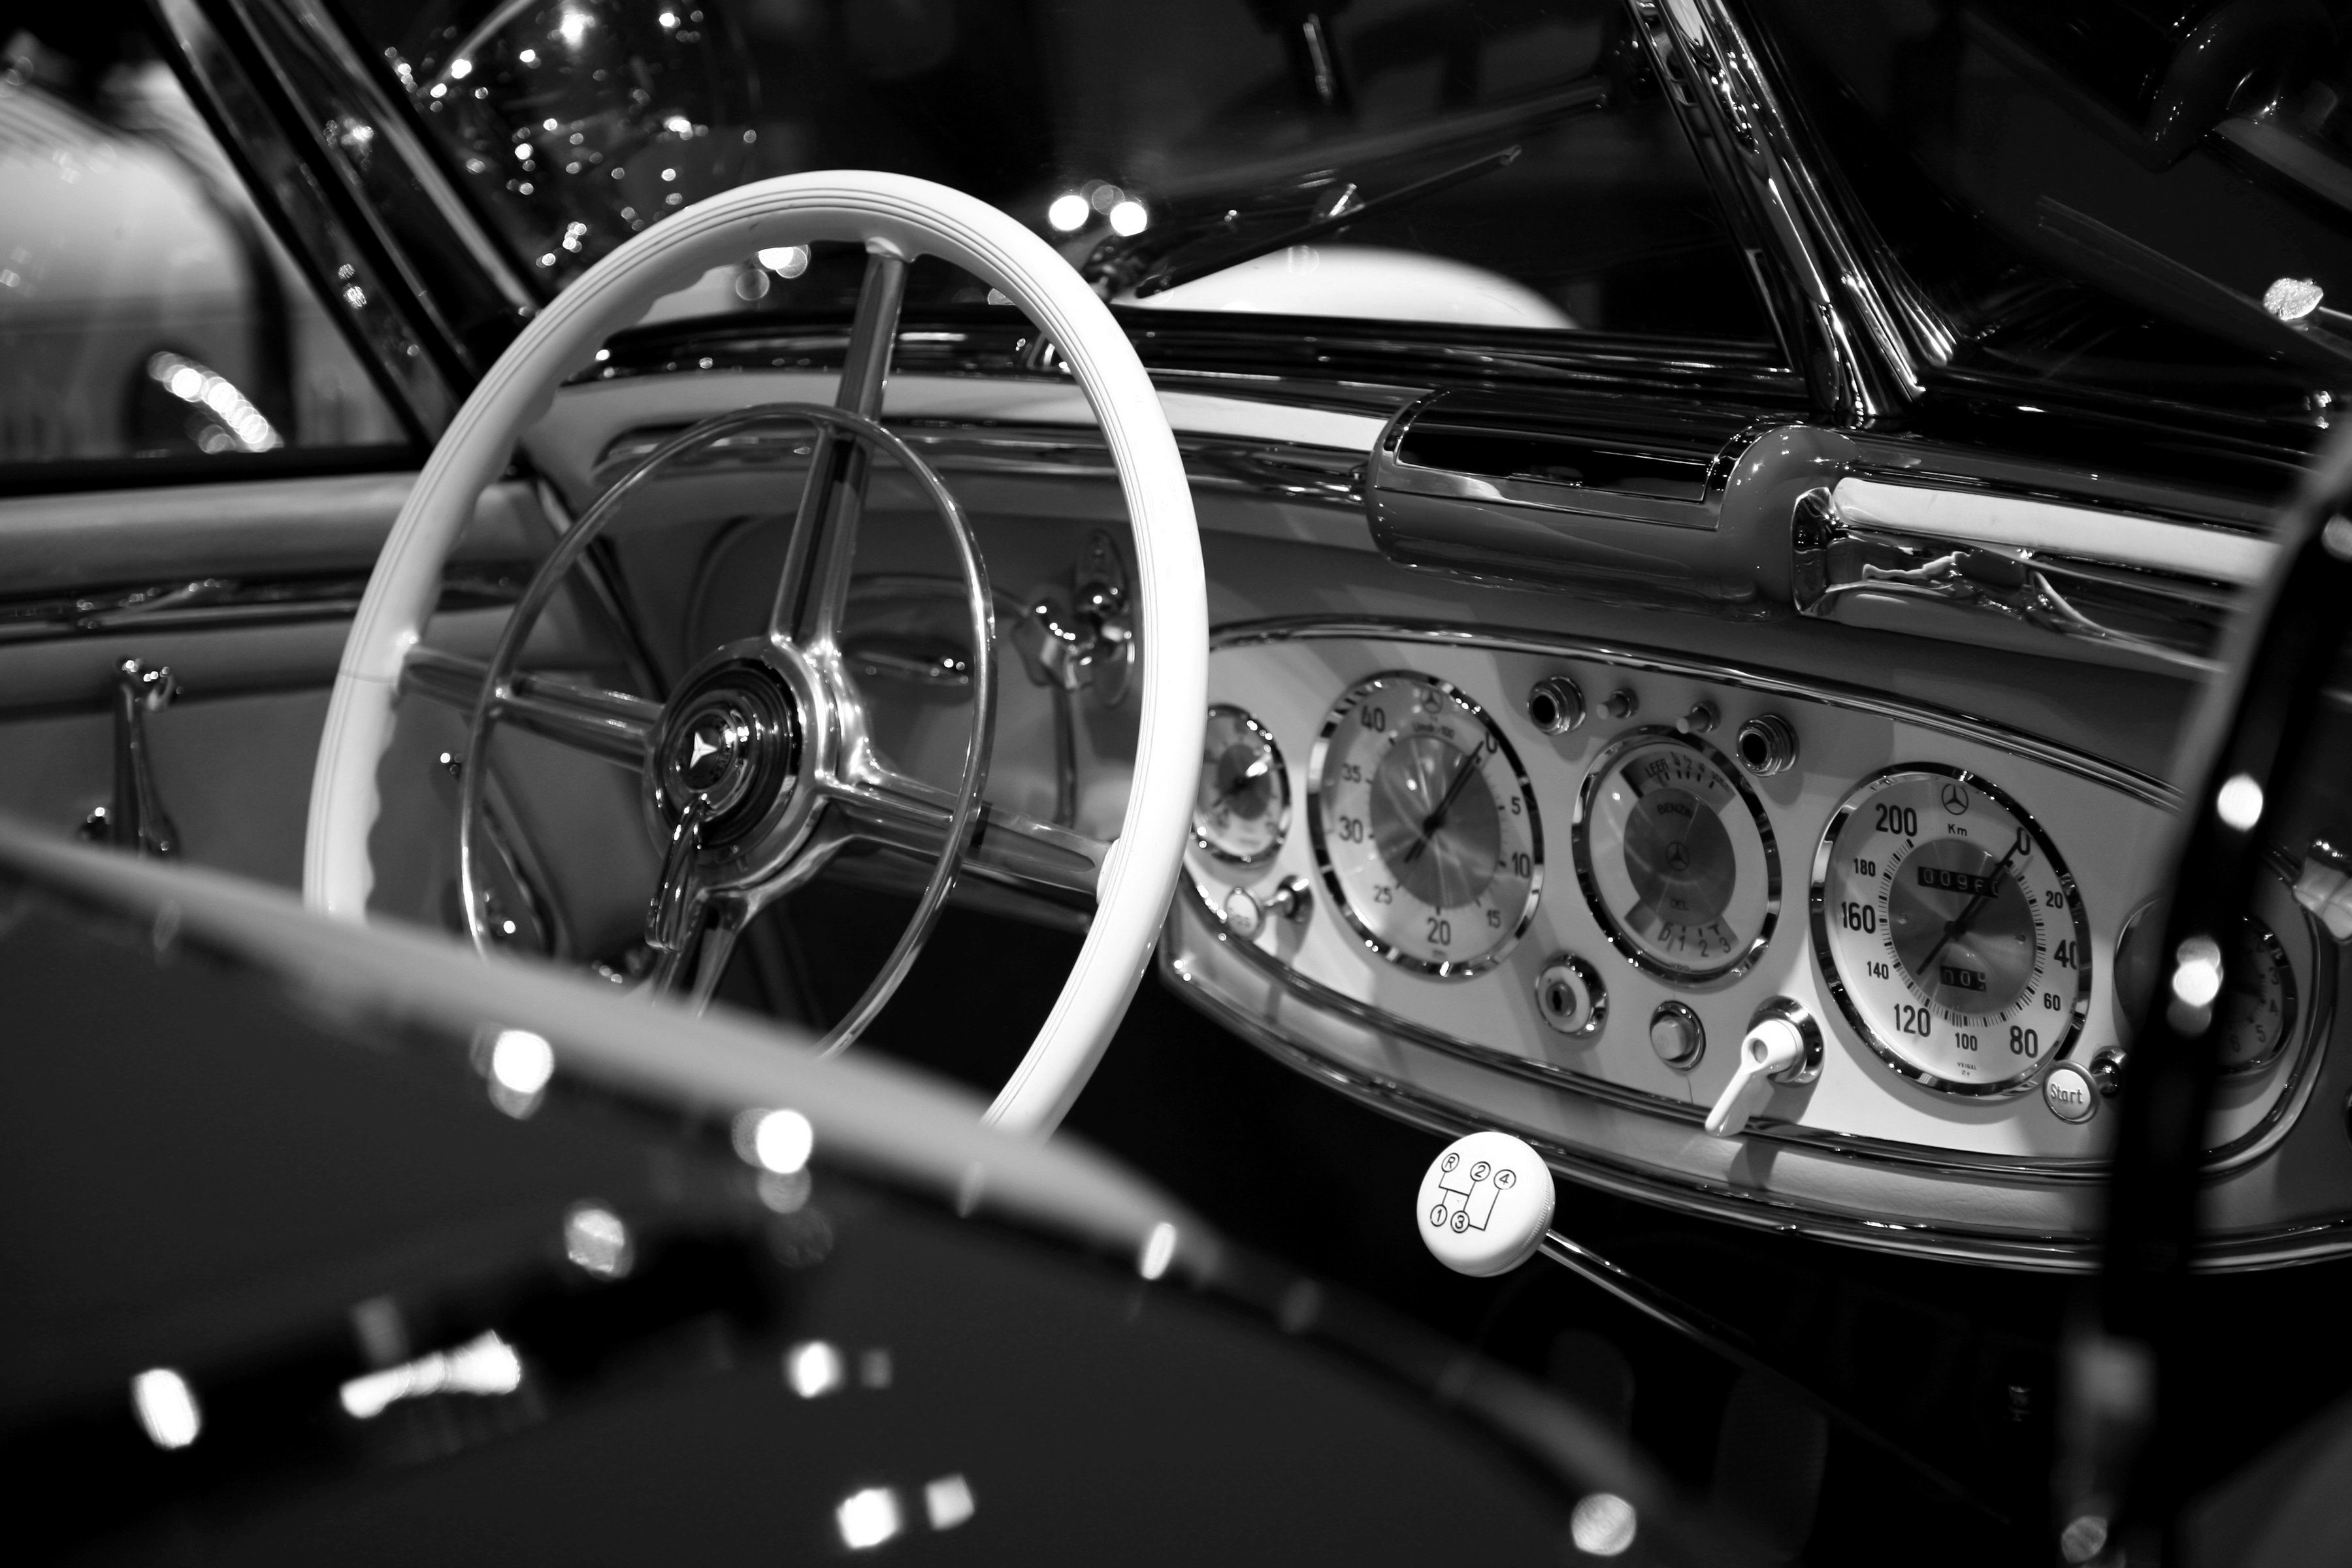 Papermoon Fototapete Auto Schwarz & Weiß